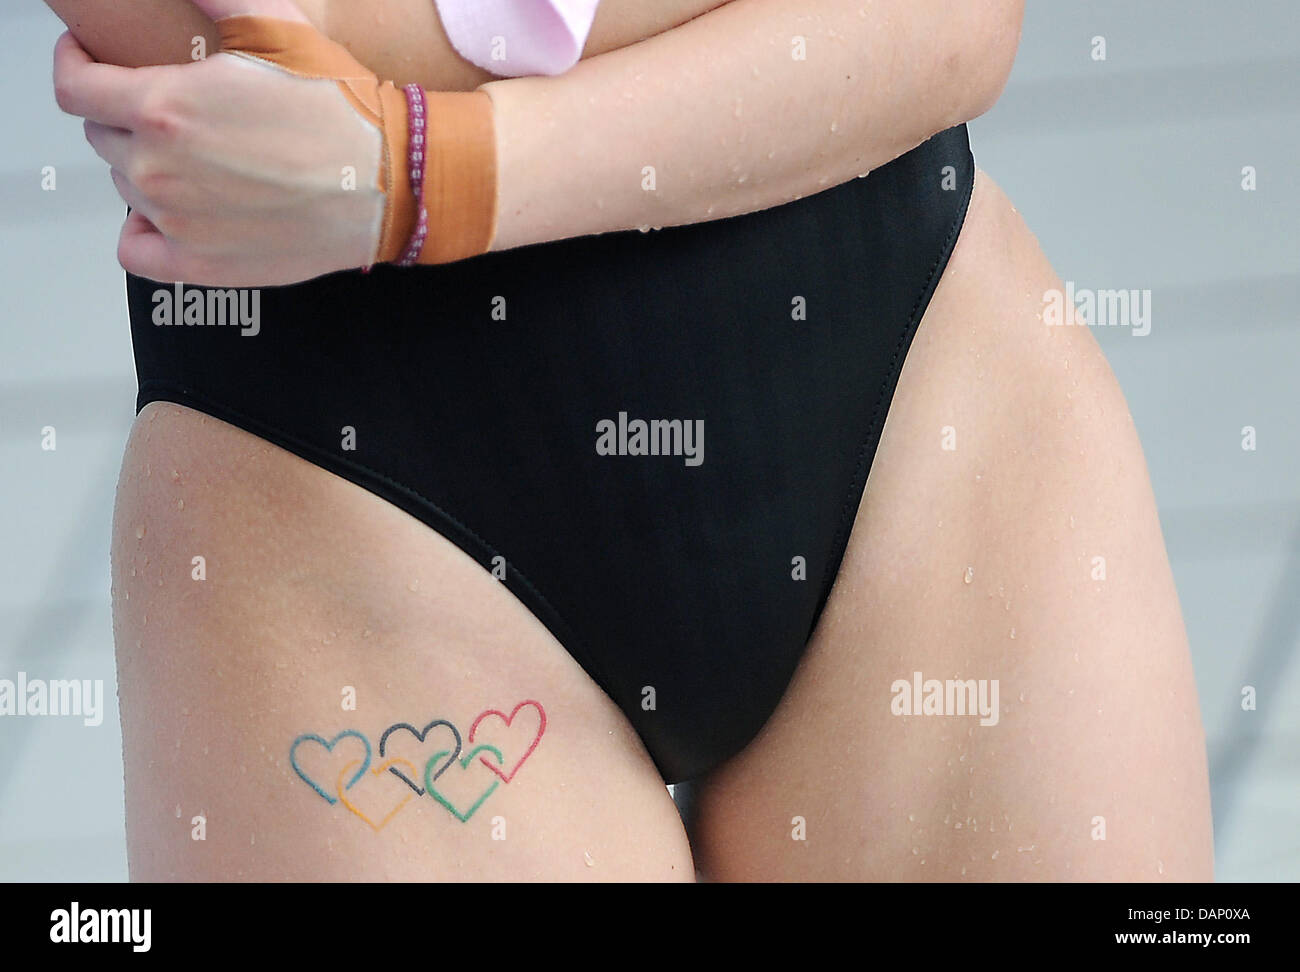 L'Australie Melissa Wu montre son tatouage au cours de la plate-forme syncro 10m à la ronde préliminaire aux Championnats du Monde de Natation FINA 2011 à Shanghai, Chine, le 18 juillet 2011. Photo : dpa Hannibal Banque D'Images